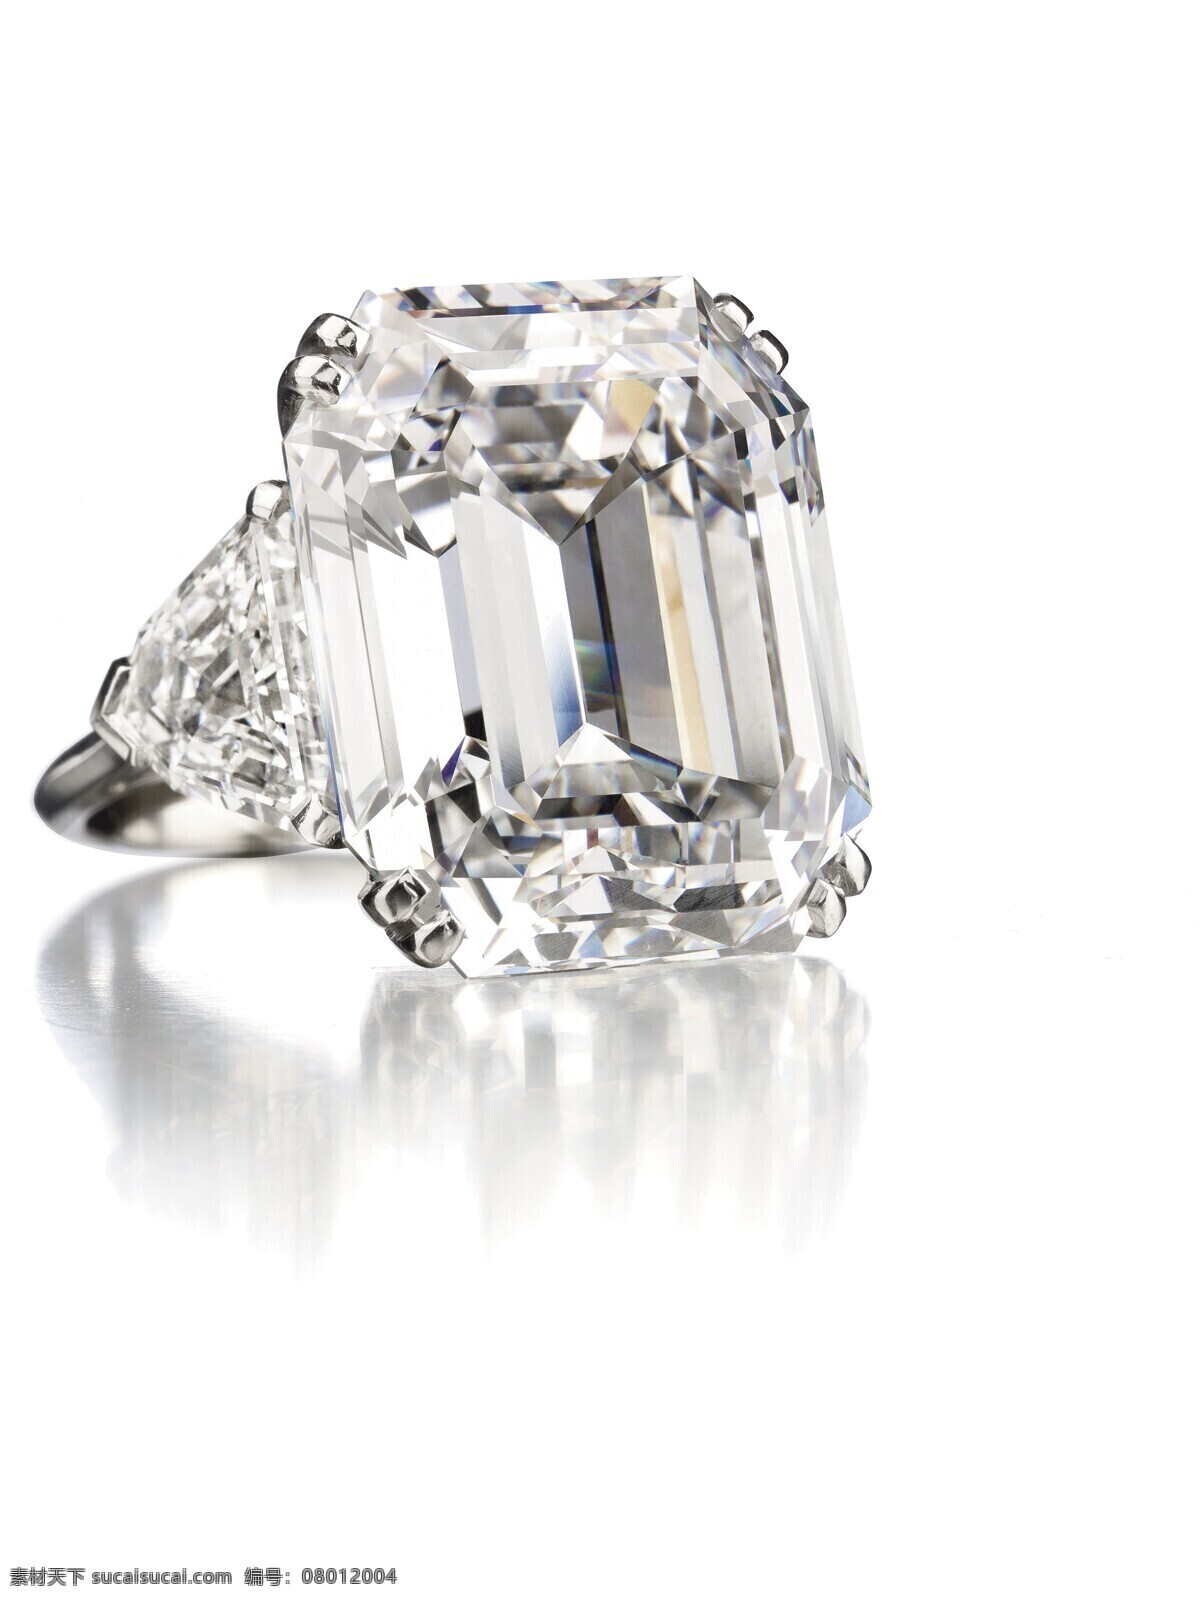 高贵 戒指 精致 女人 闪亮 奢侈 生活百科 钻石 钻石戒指 饰品 女性奢侈品 生活素材 淘宝素材 其他淘宝素材